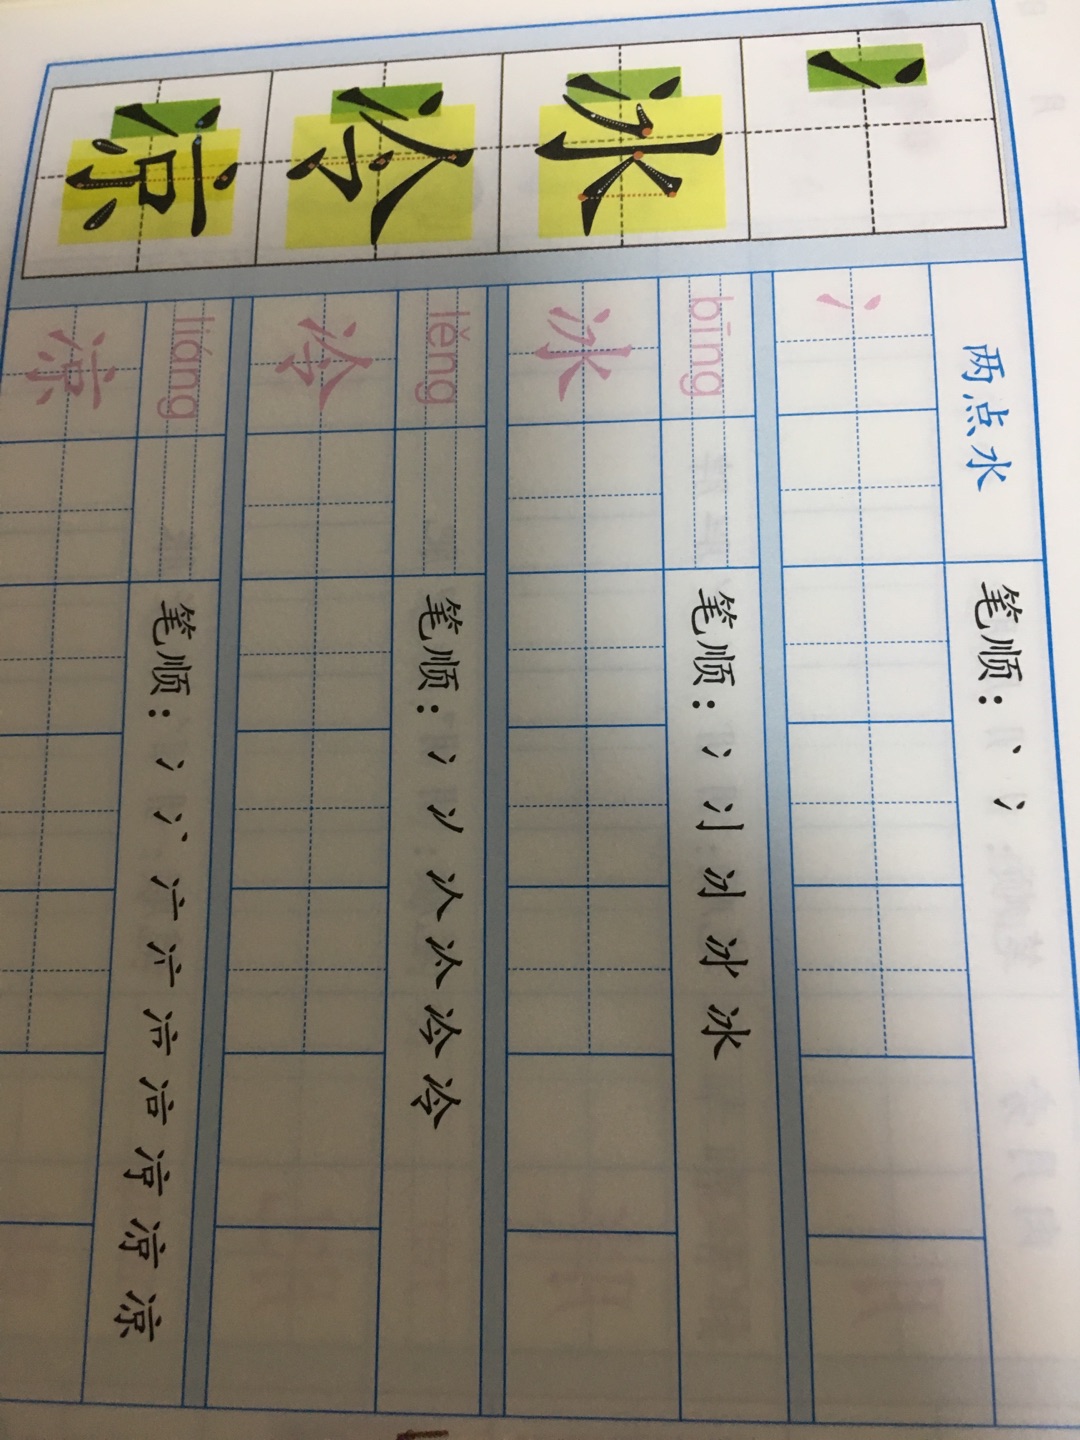 很不错的汉子学习的书，都孩子学写汉字有帮助。